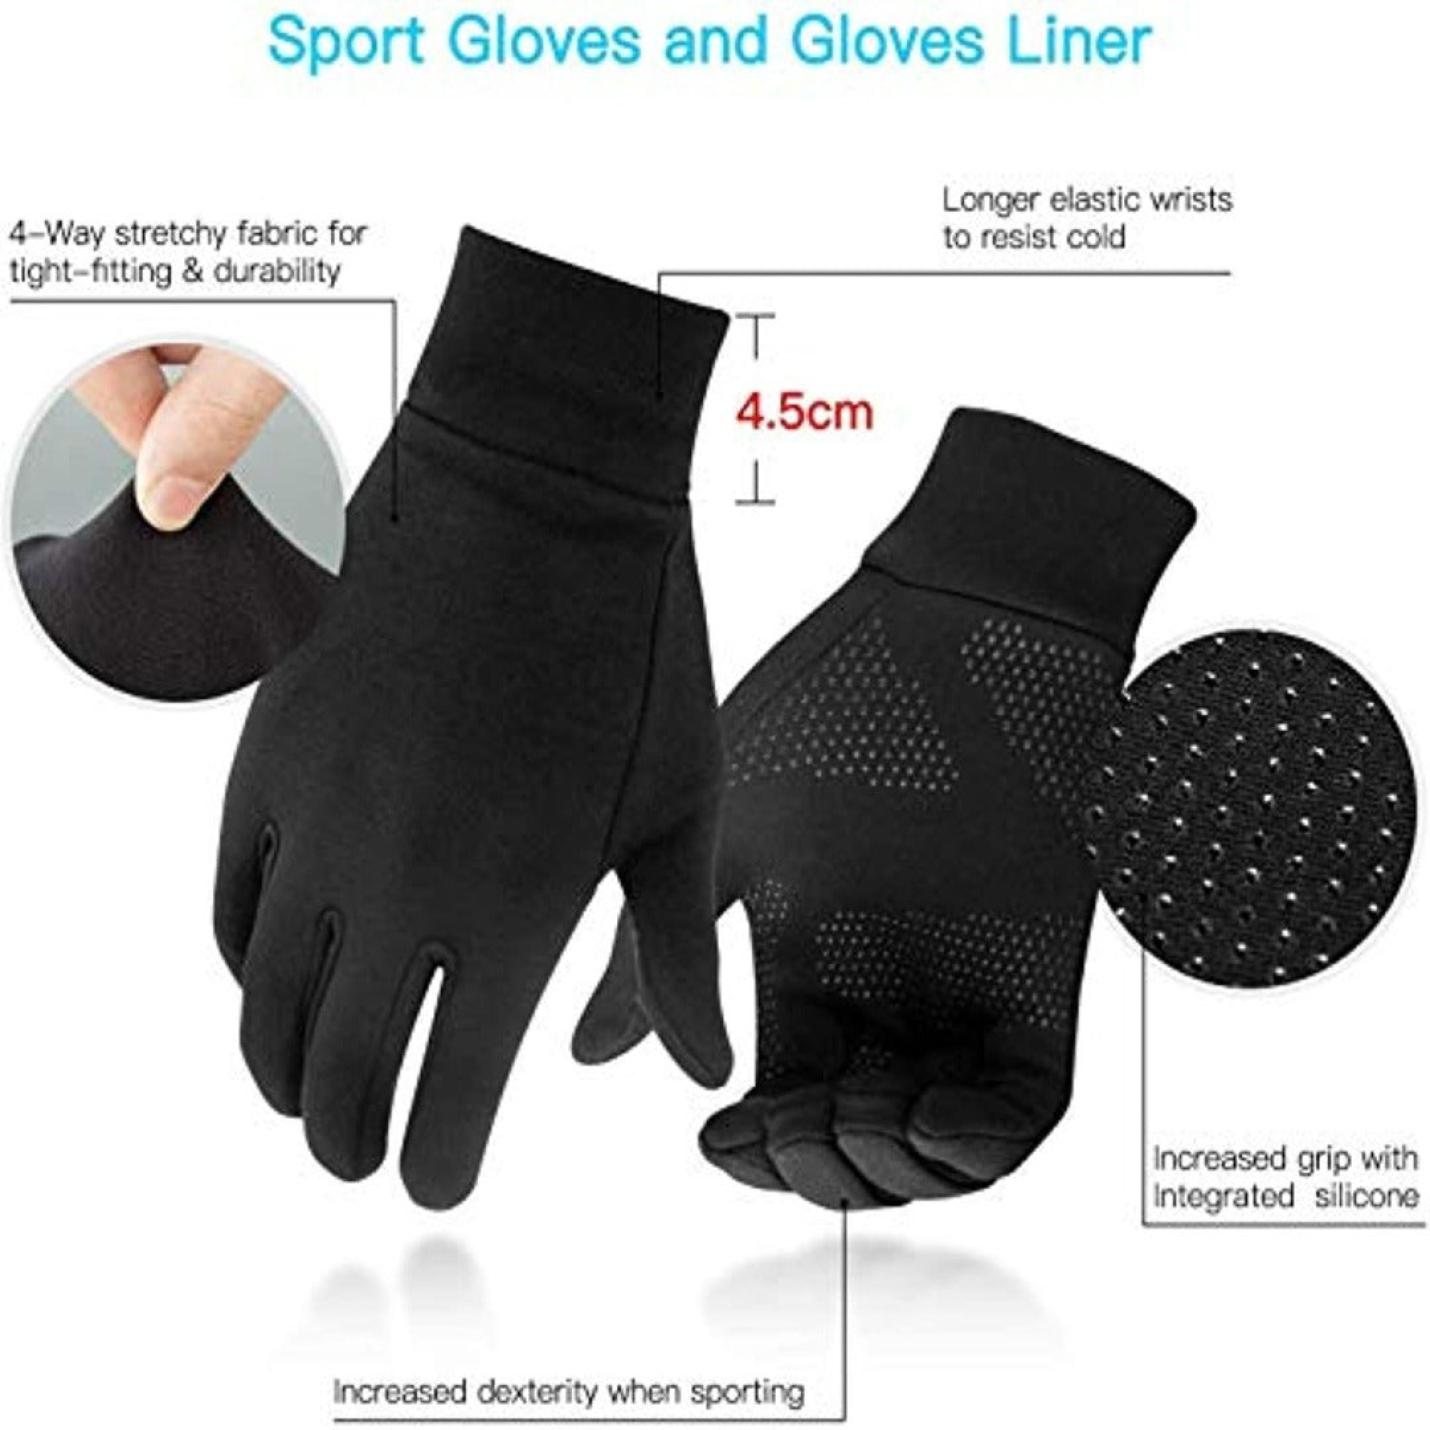 Warmtebehoudende sporthandschoenen - Ideaal voor koude weersomstandigheden en buitensporten